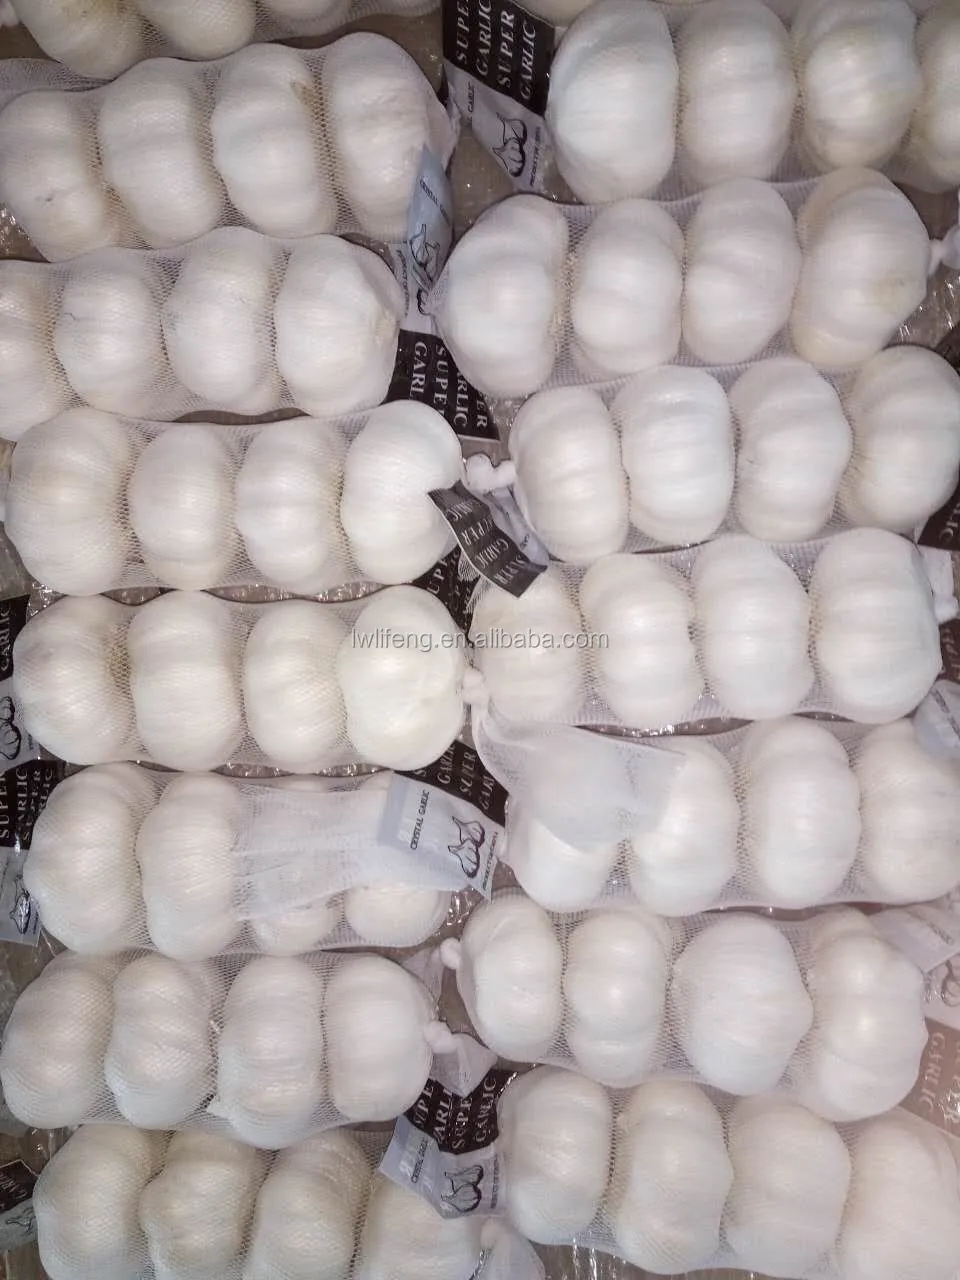 fresh Chinese White Garlic for sale / Pure White Garlic